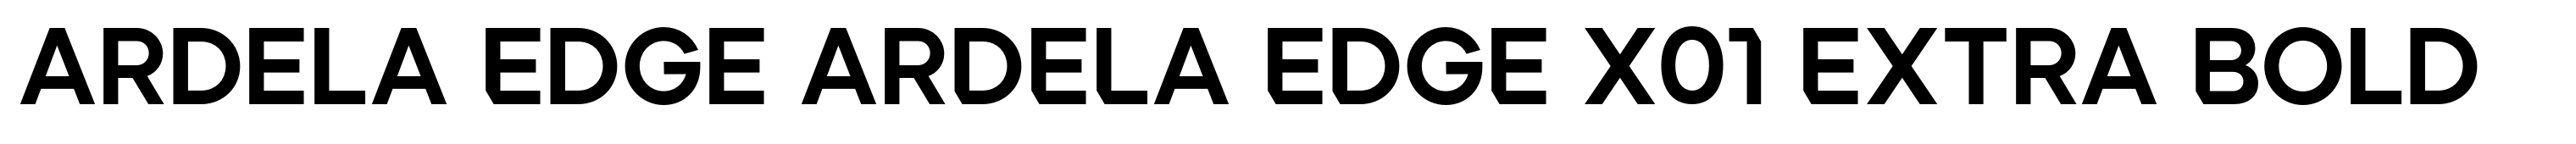 Ardela Edge ARDELA EDGE X01 Extra Bold